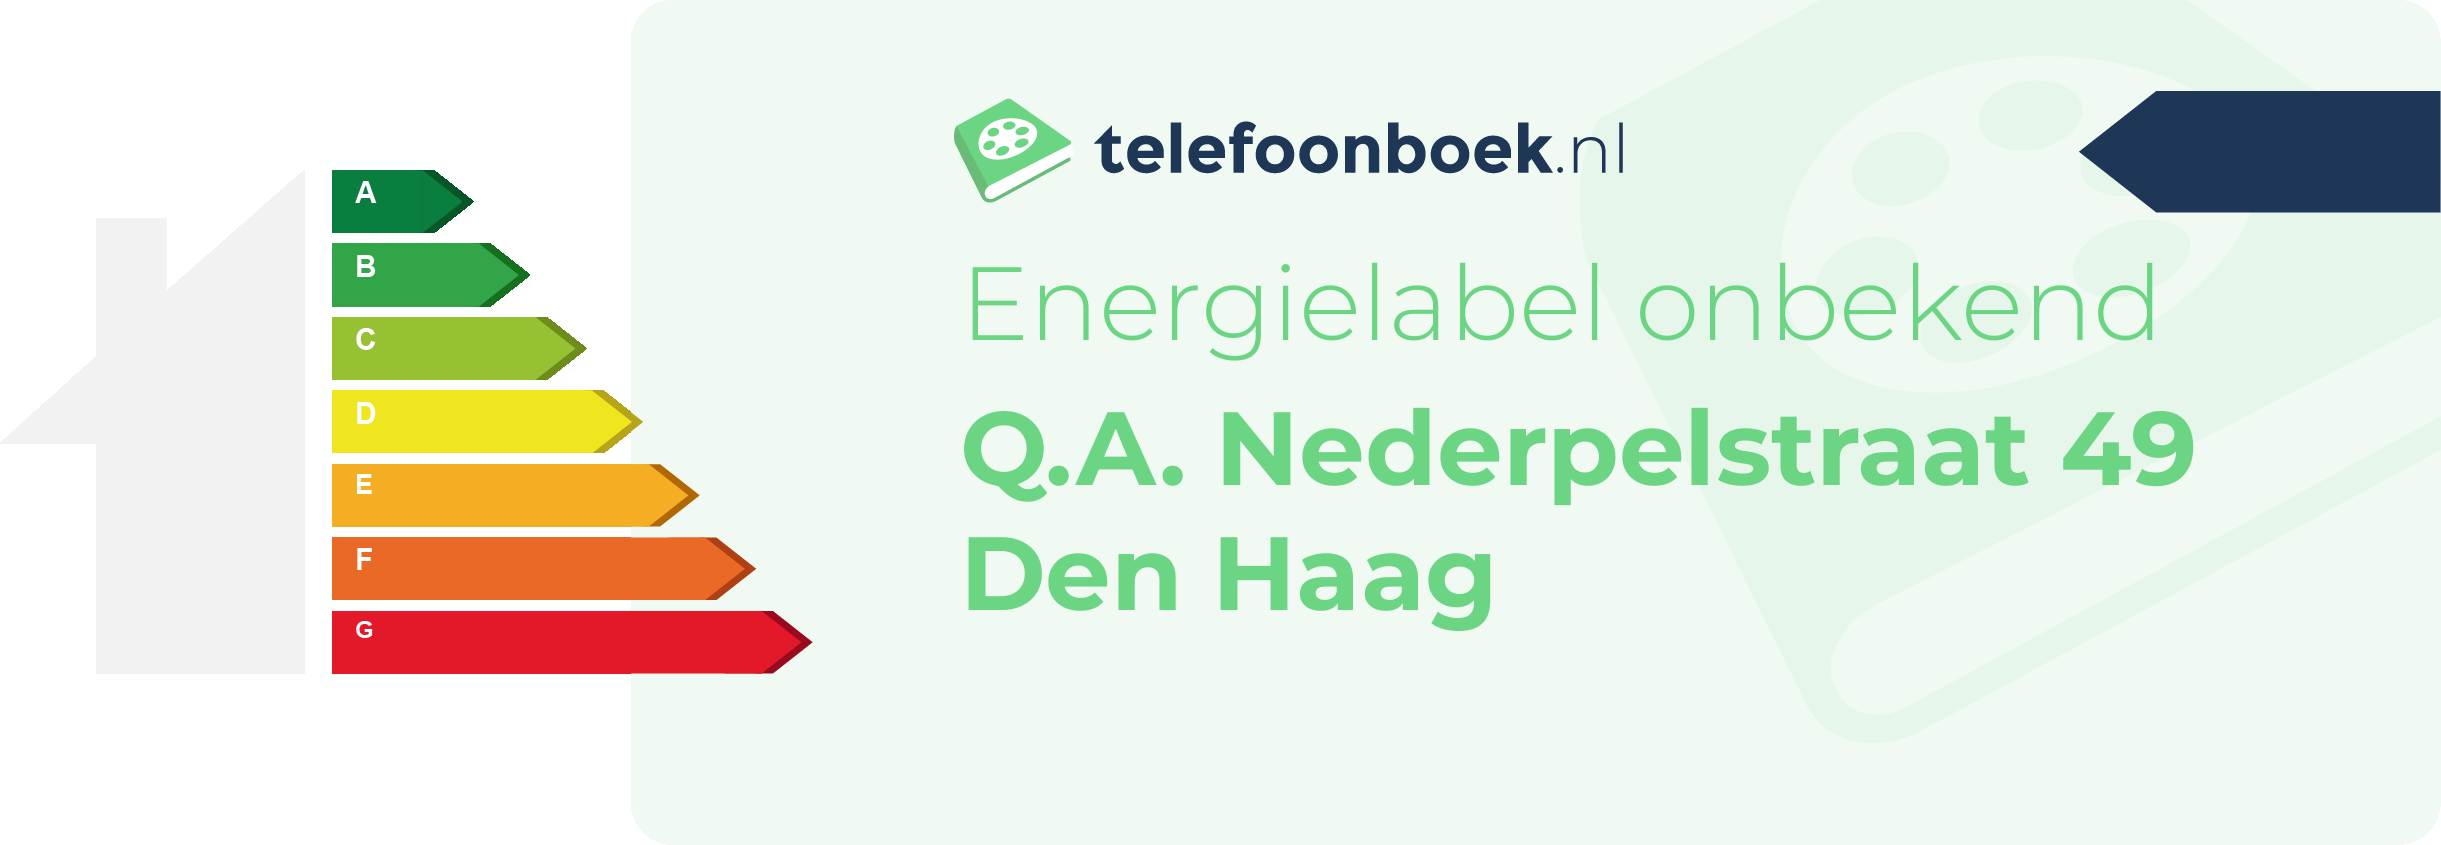 Energielabel Q.A. Nederpelstraat 49 Den Haag